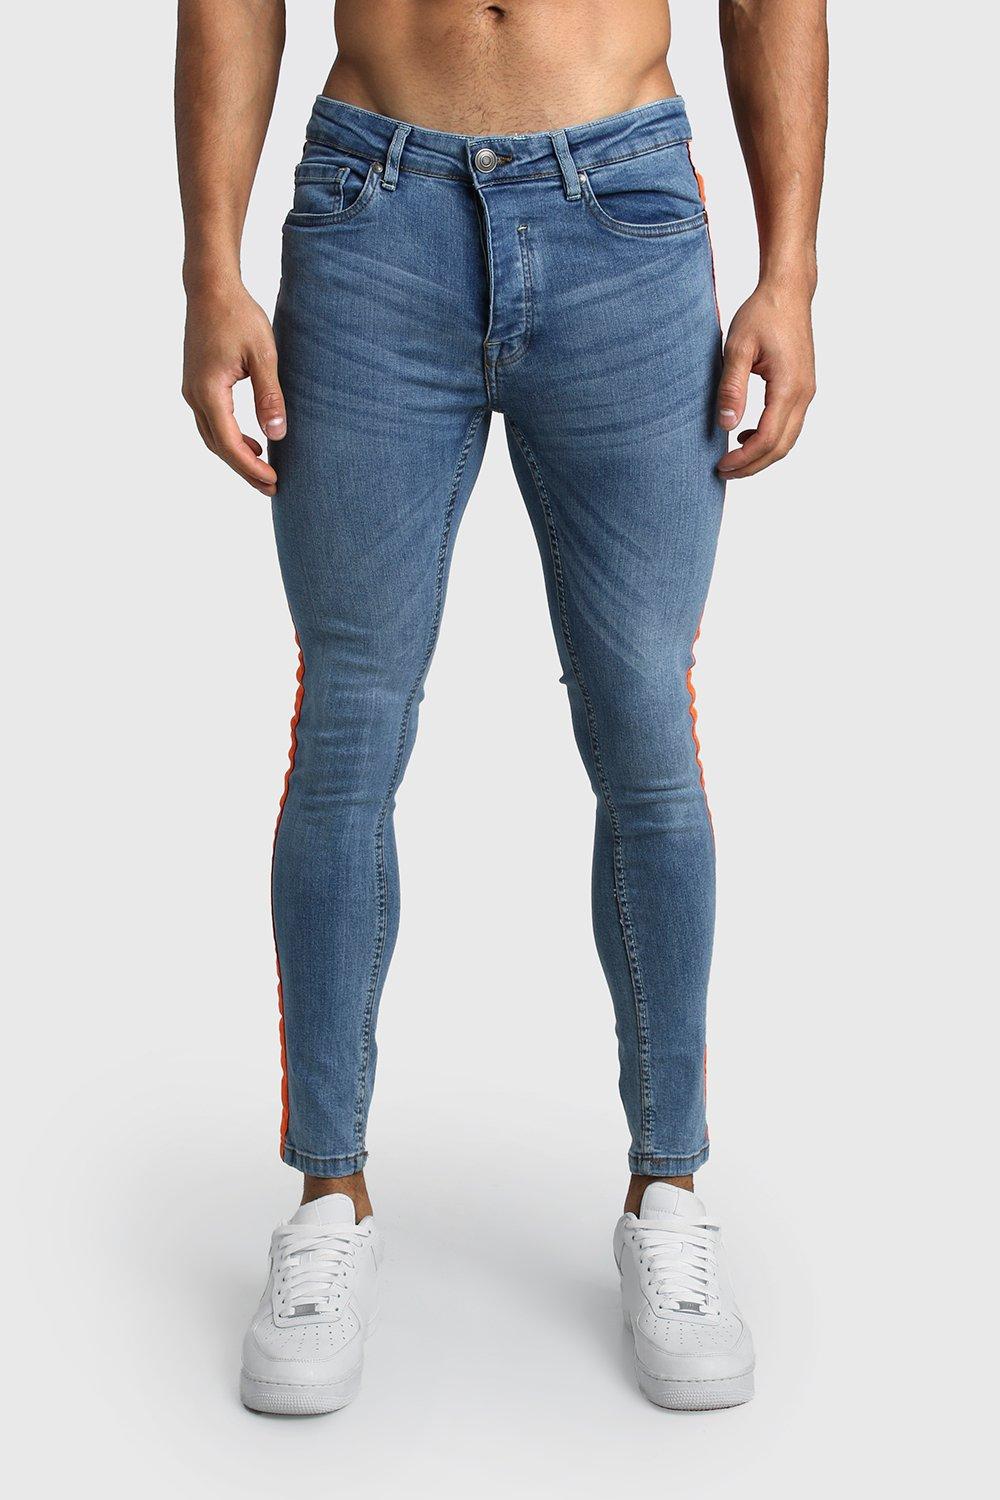 men's perfect fit jeans